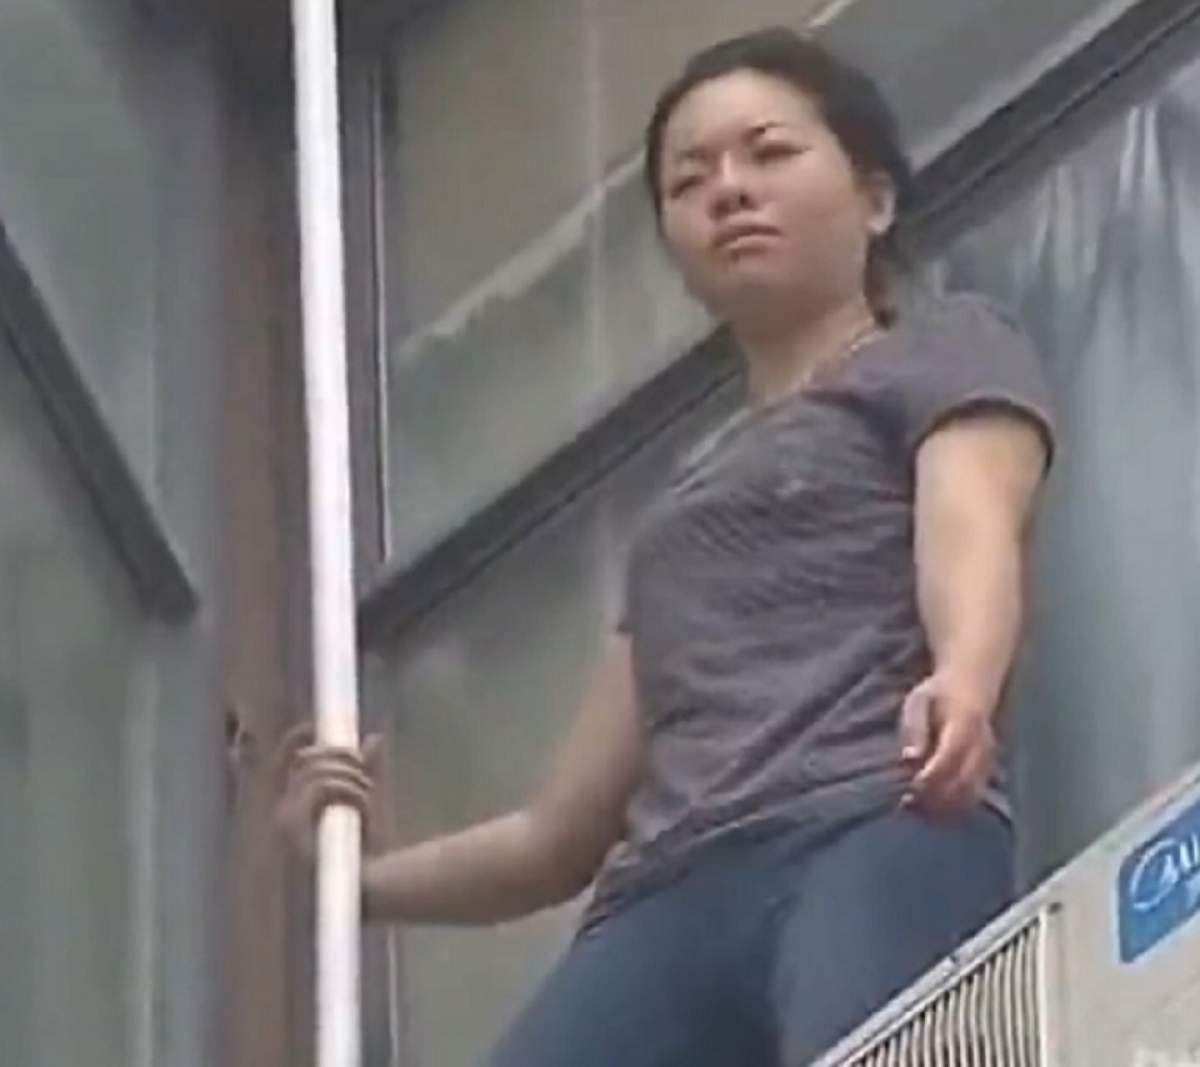 Tentativă de sinucidere şocantă! O femeie şi-a tăiat venele şi a vrut să se arunce de pe bloc! / VIDEO CUTREMURĂTOR